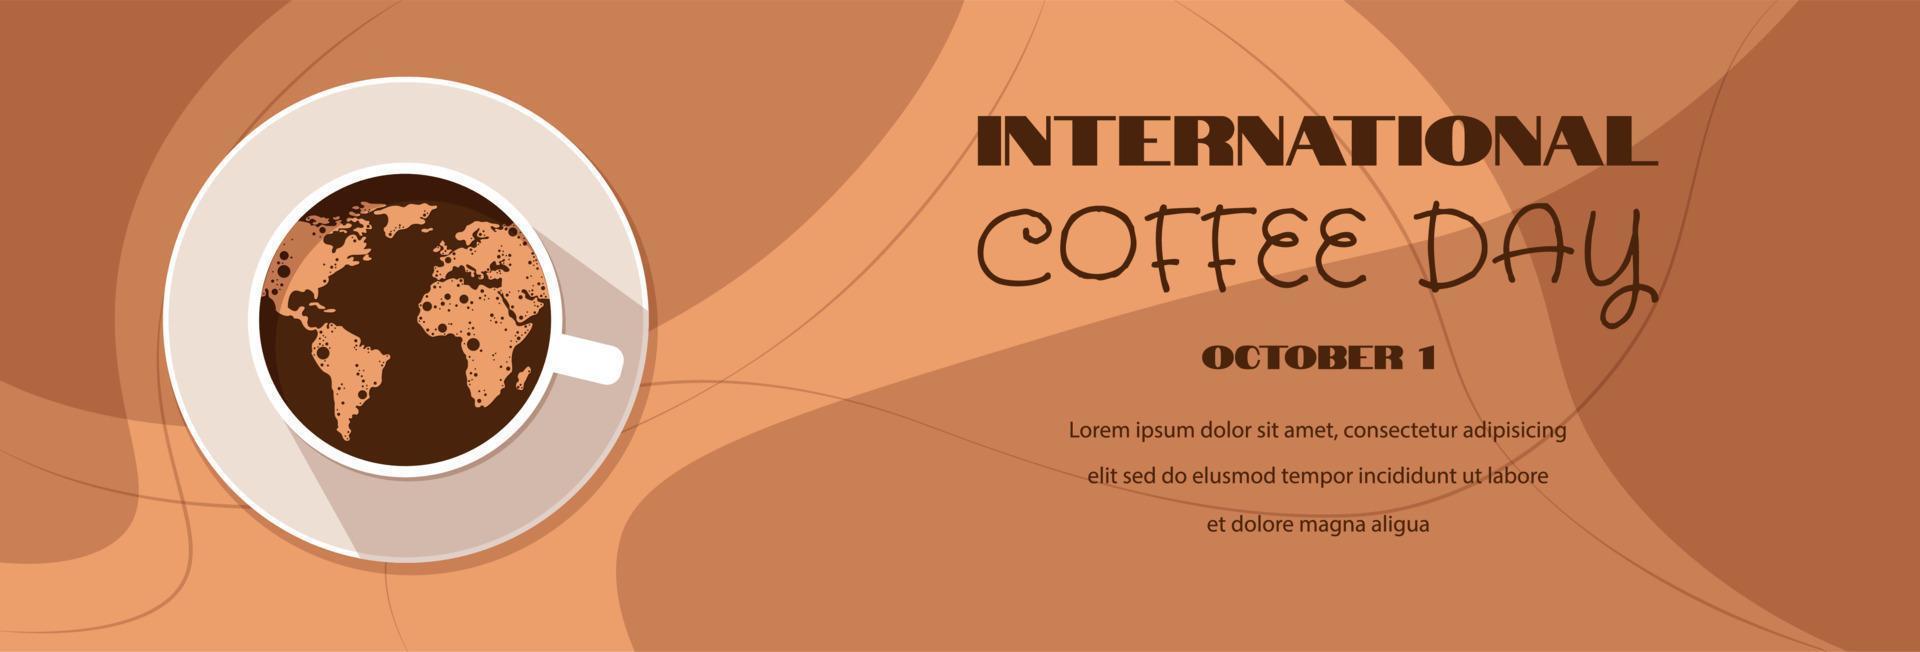 vektorillustration, kaffeetasse mit schaum bildet eine karte der welt. geeignet für Banner, Poster, Grußkarten, Logo, Symbol oder Vorlage. Internationaler Tag des Kaffees. horizontales Banner. vektor